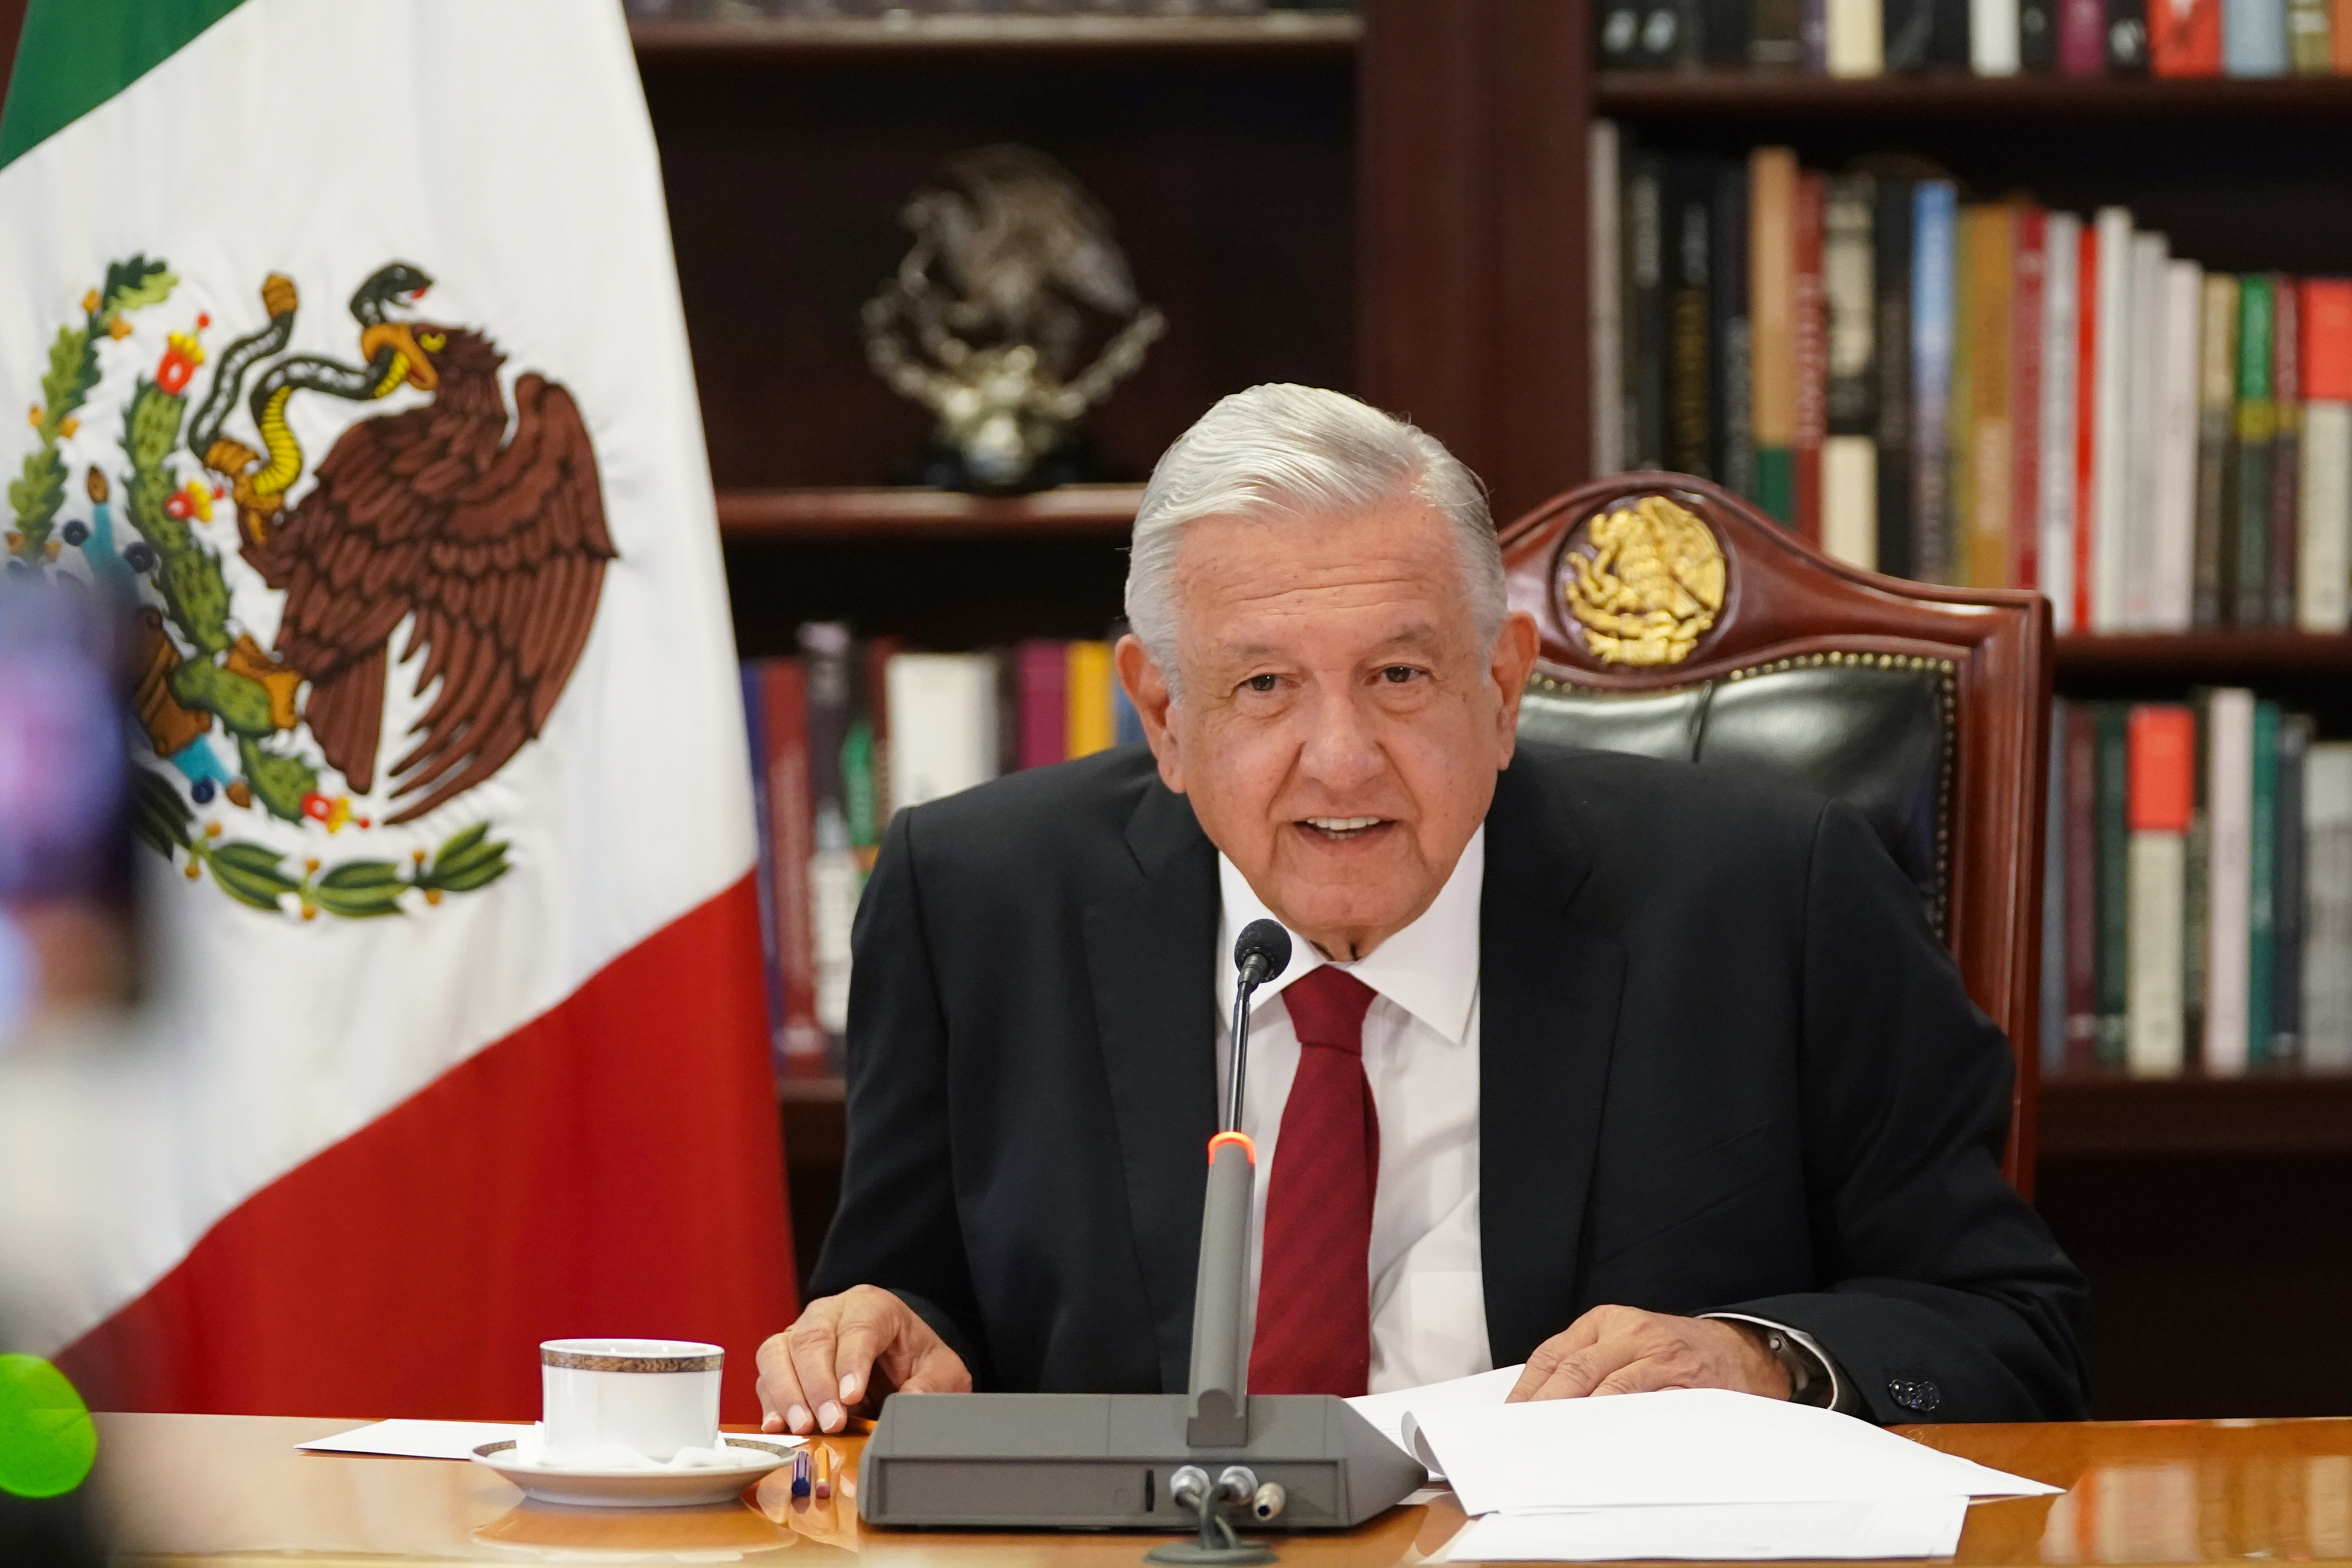 Discurso del presidente Andrés Manuel López Obrador en el Foro de las Principales Economías sobre Energía y Acción Climática